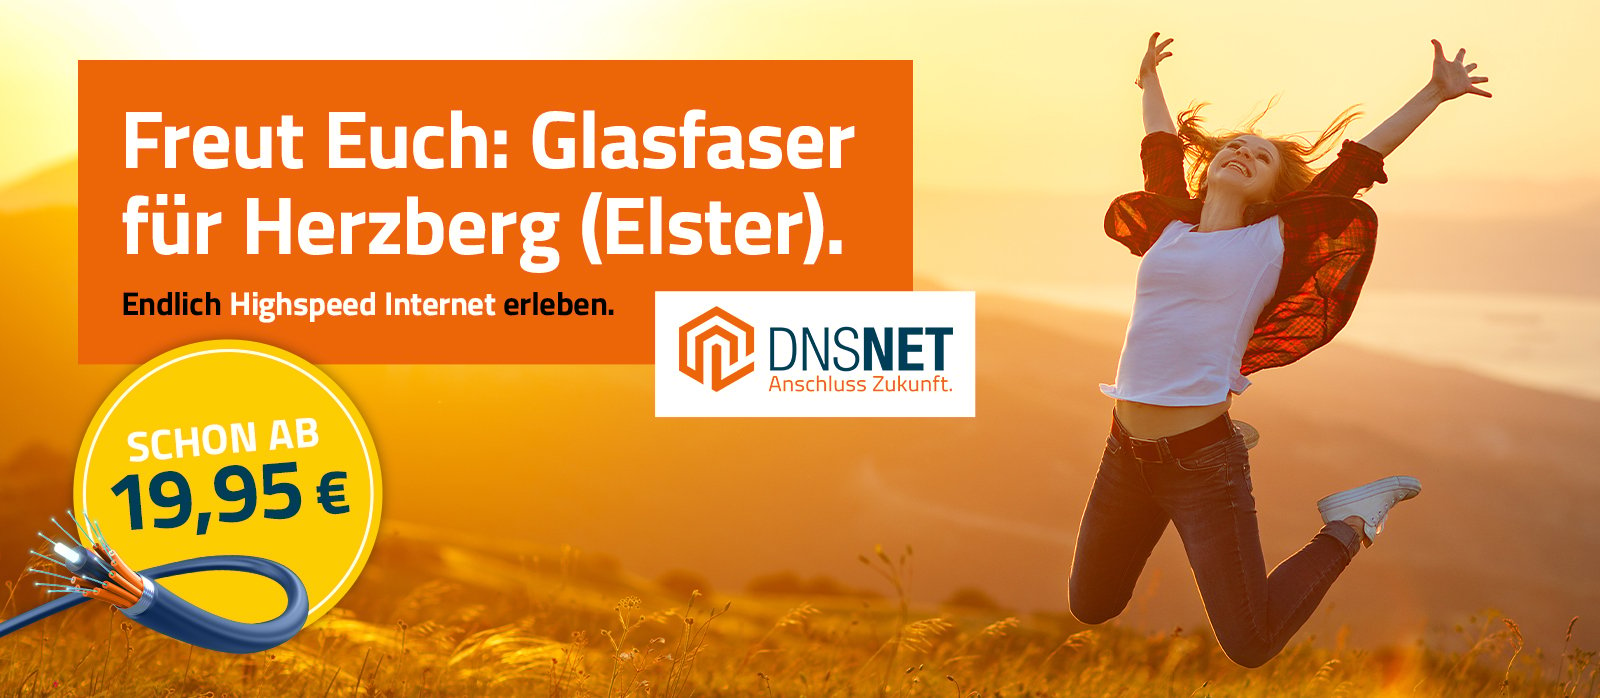 DNSNET-Web-Banner-Herzberg2-1600x698